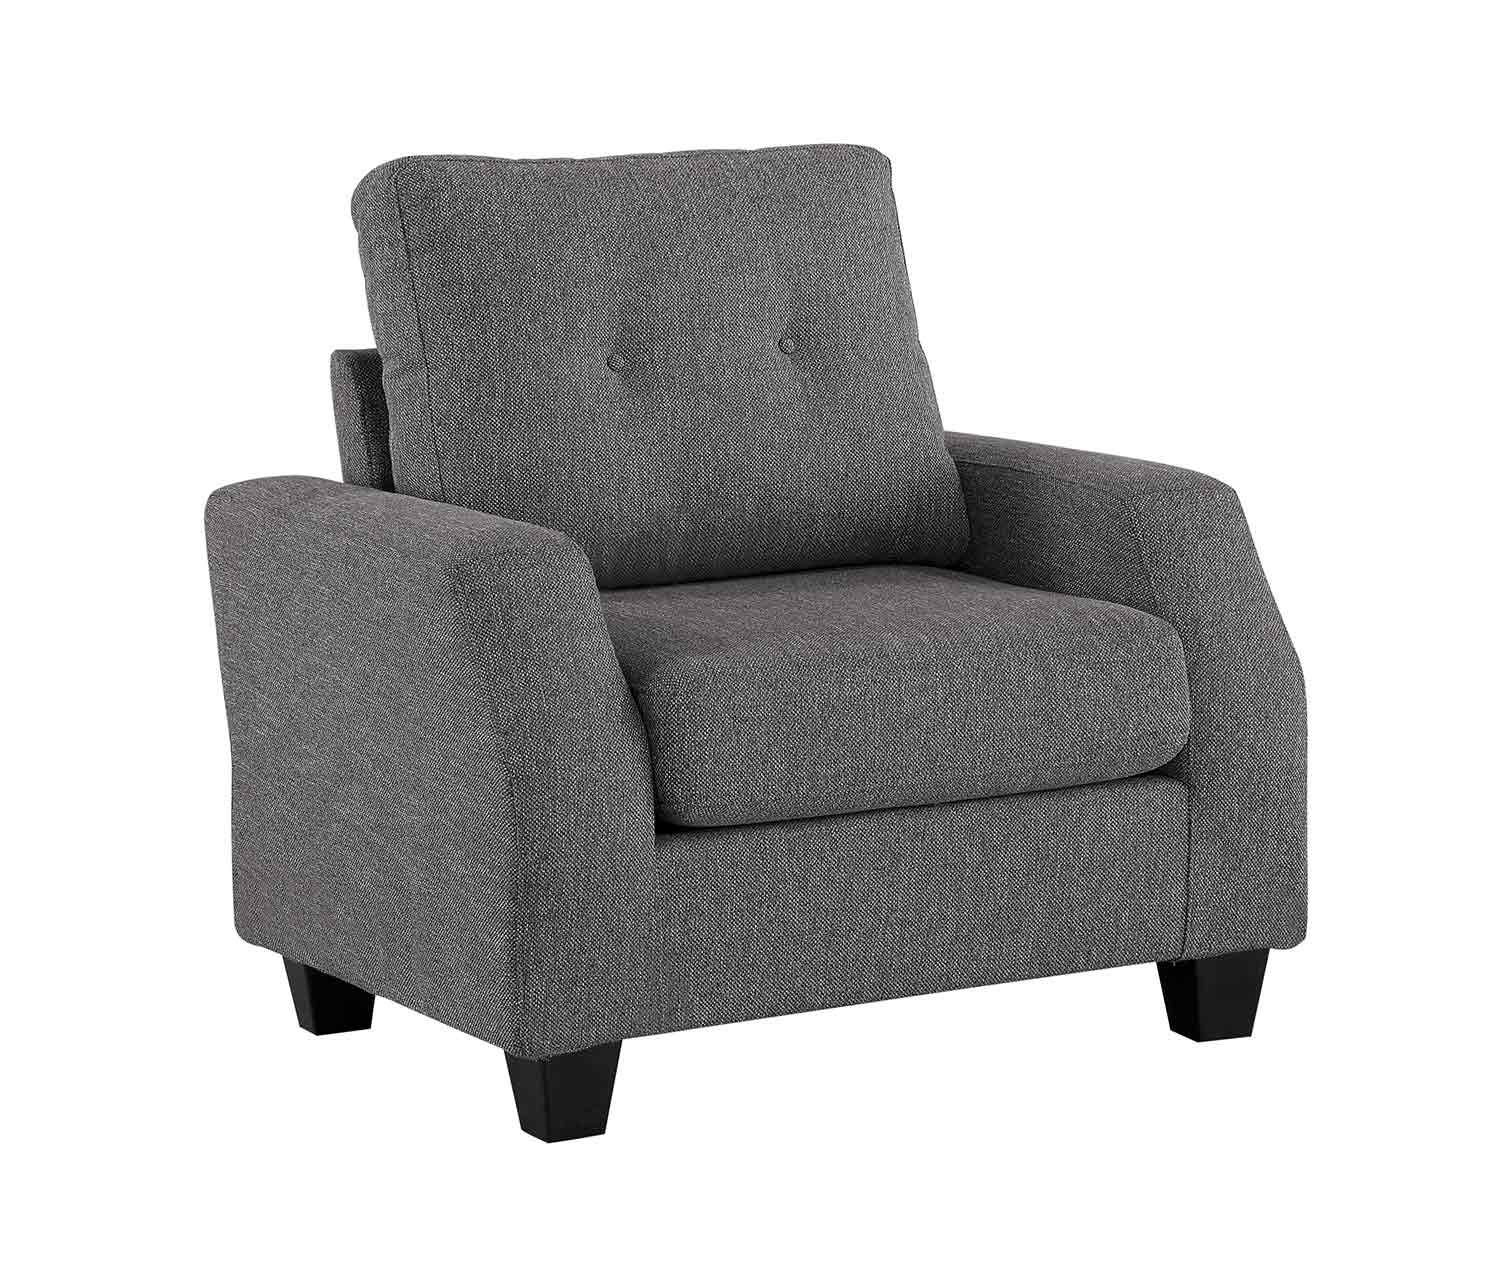 Homelegance Vossel Chair - Gray